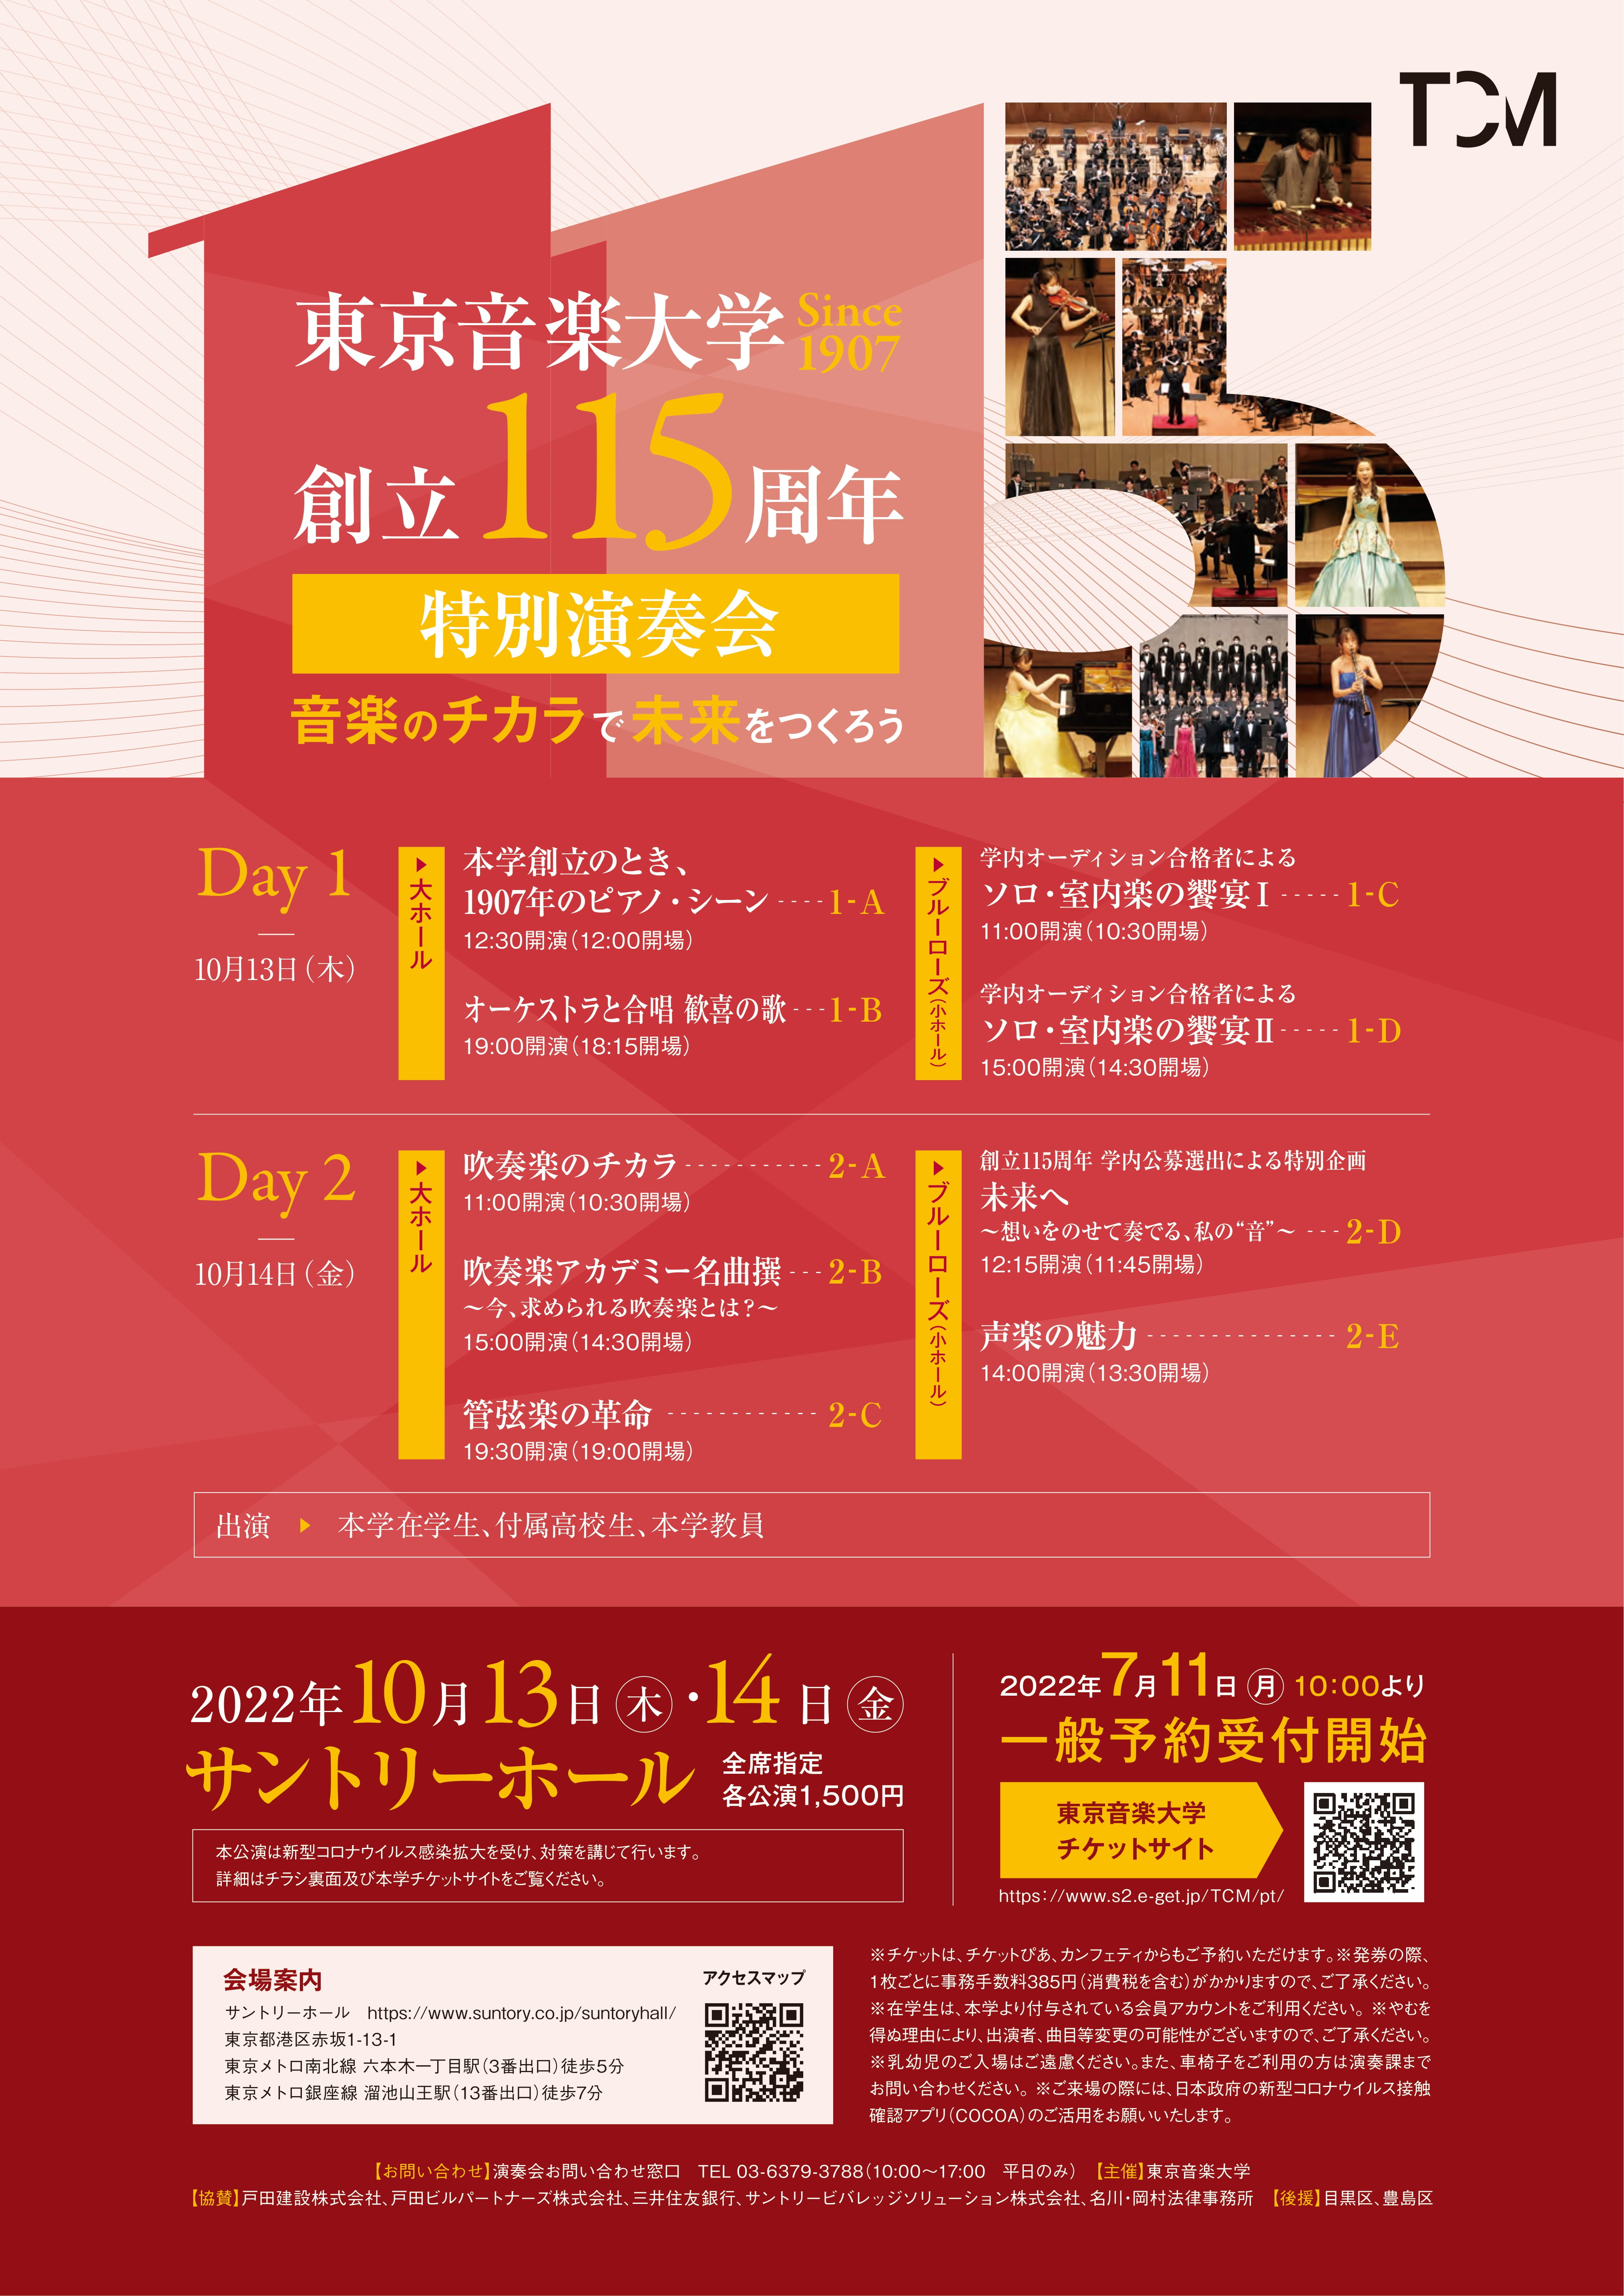 東京音楽大学 創立115周年特別演奏会 特設ページ